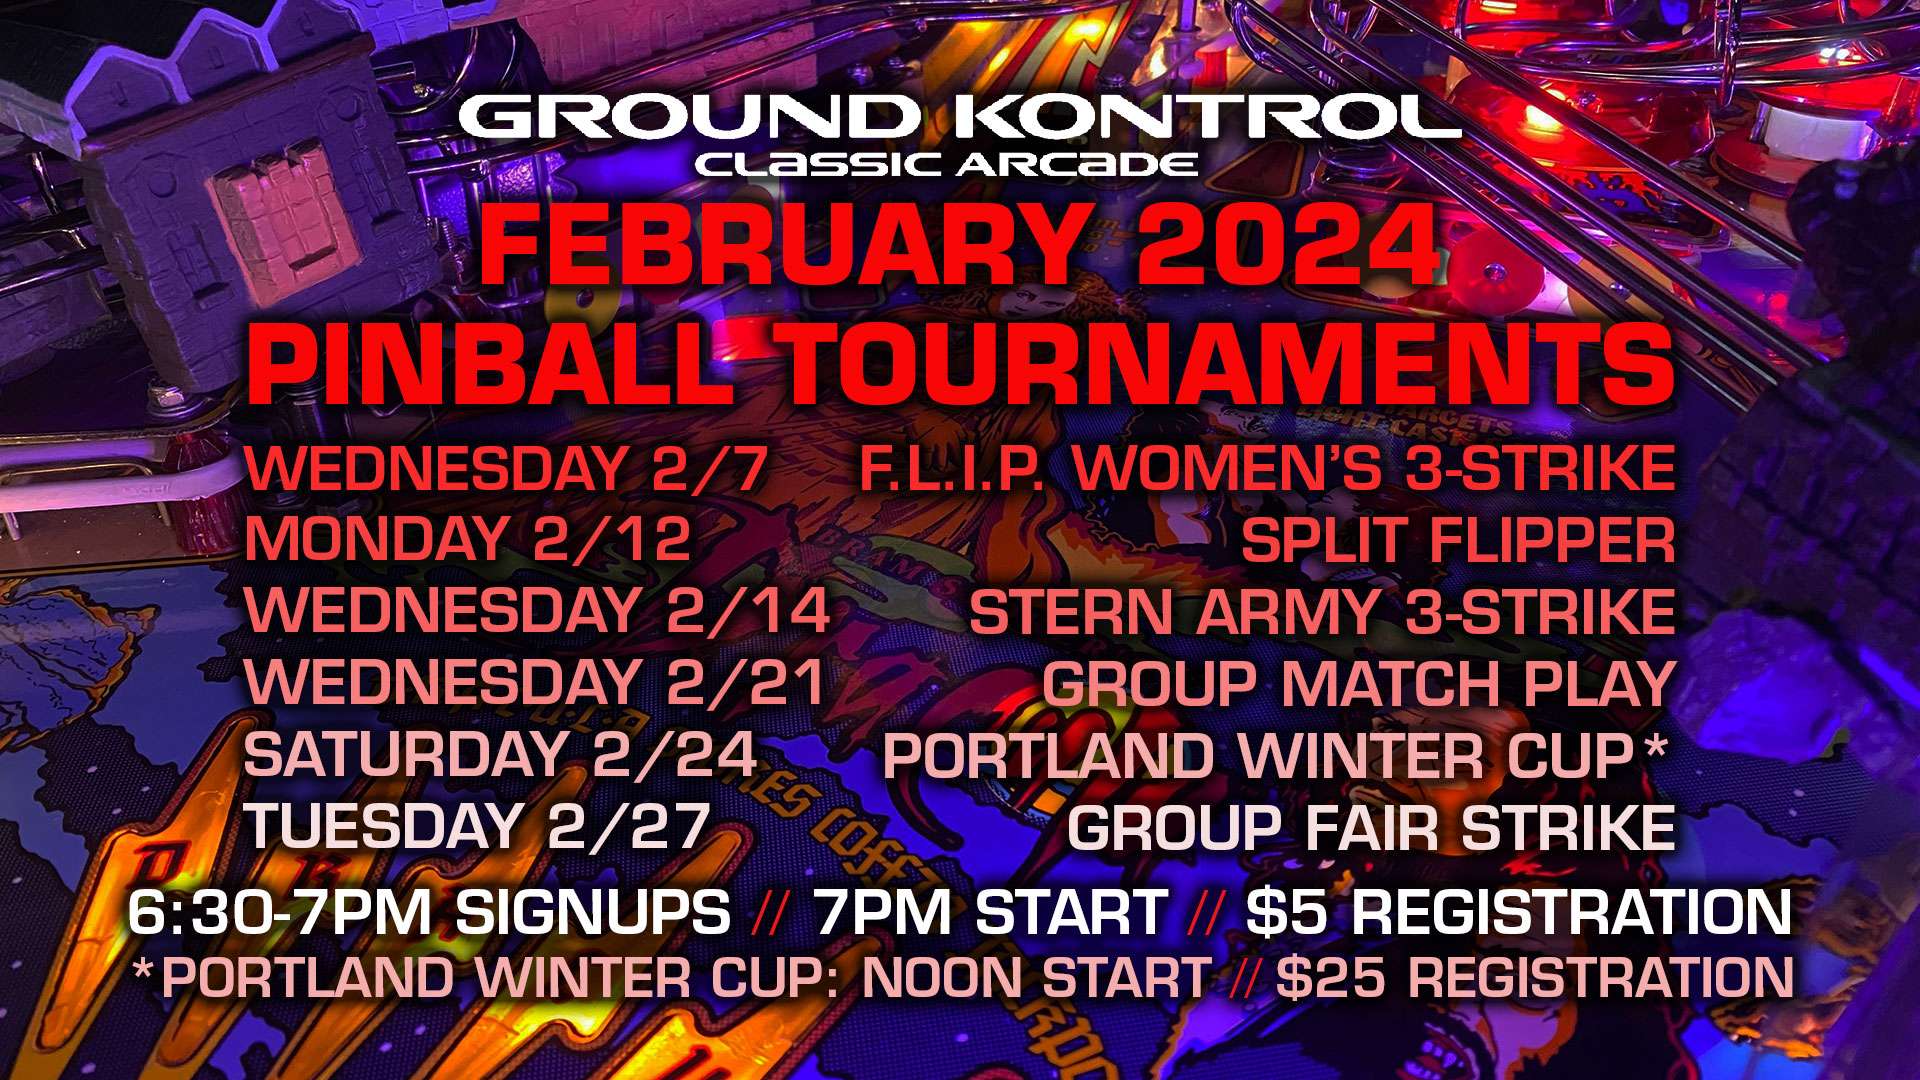 February 2024 Pinball Tournaments